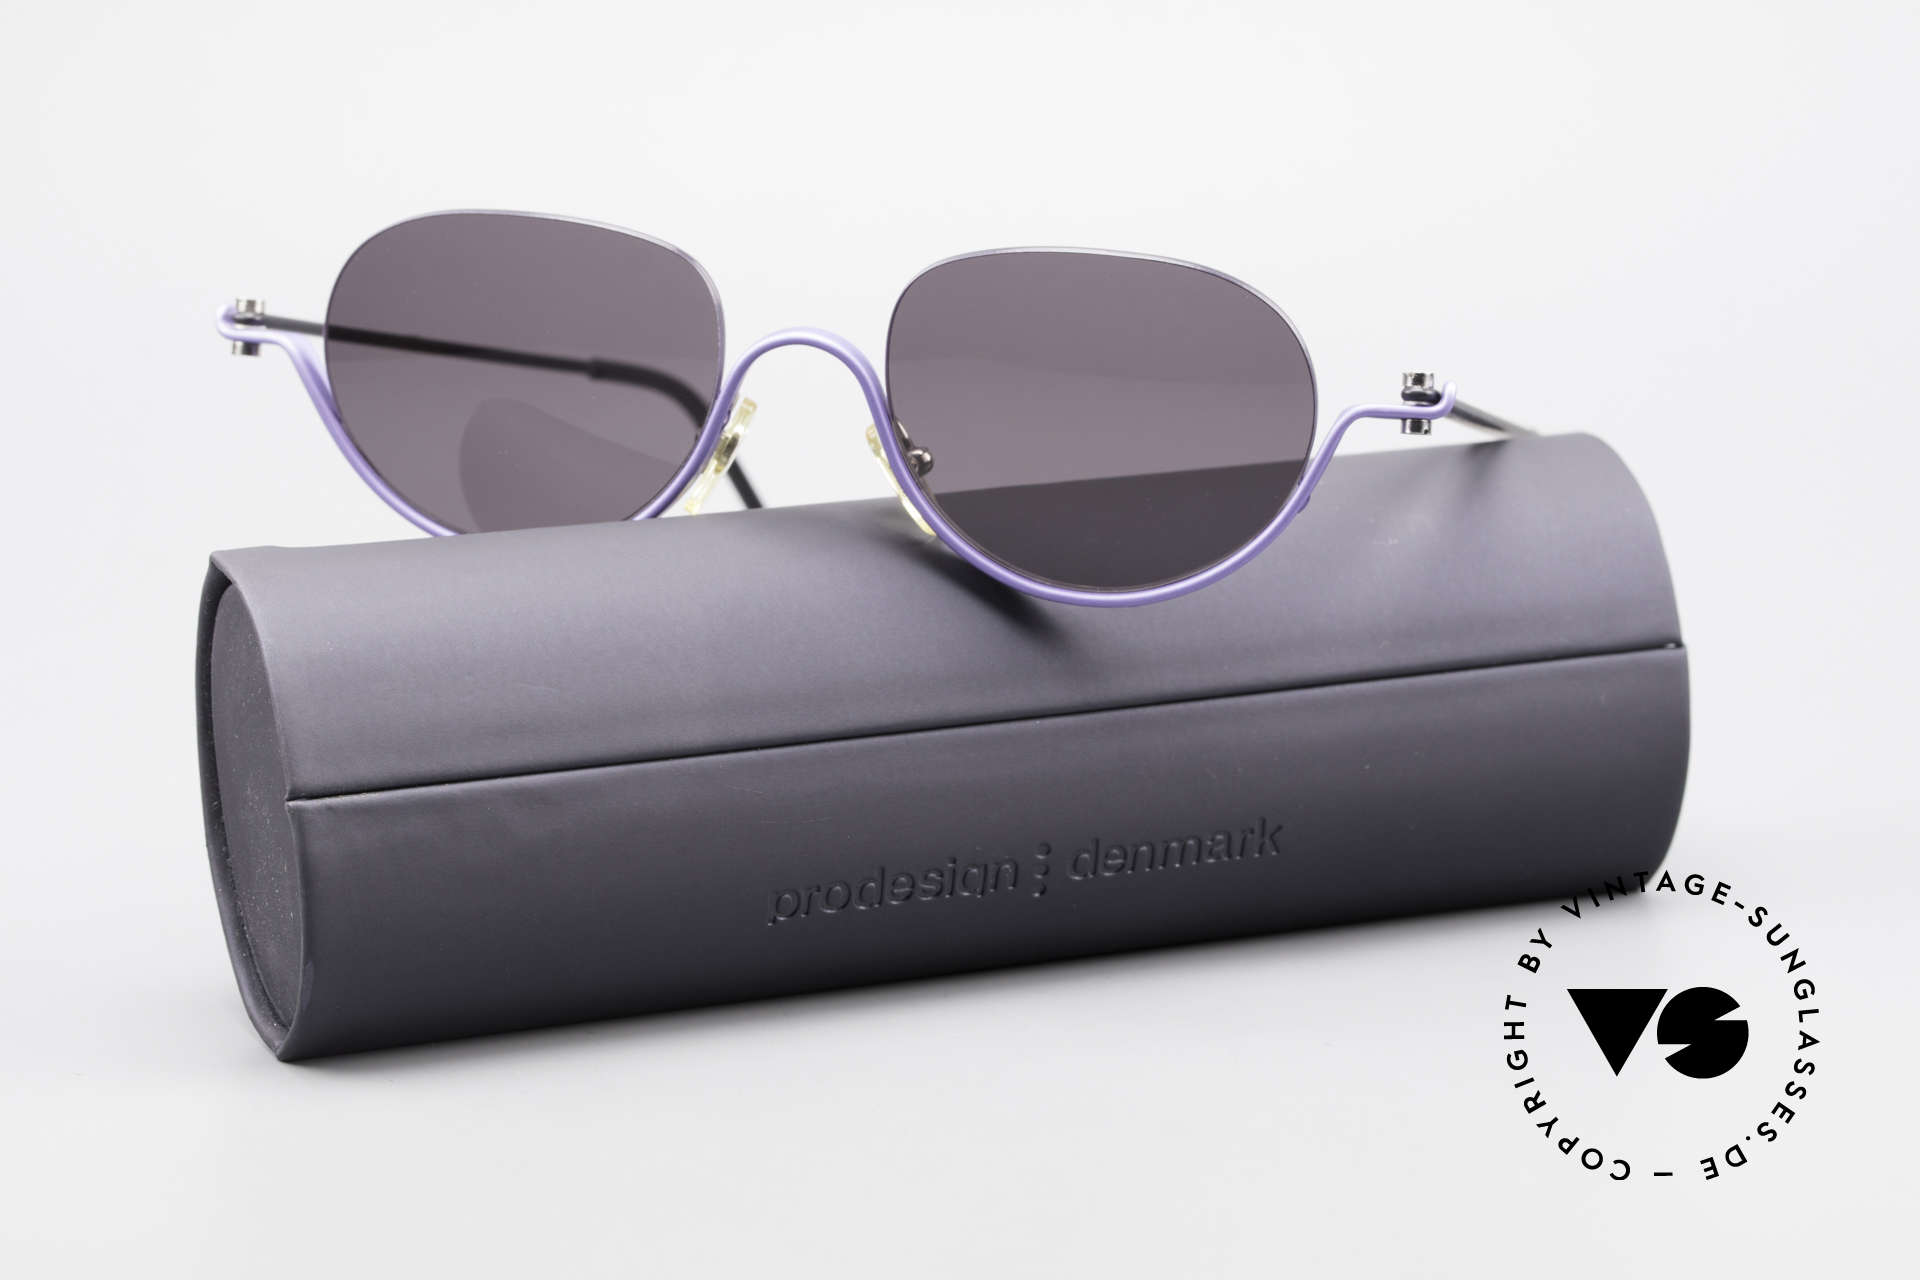 ProDesign No8 Gail Spence Design Eyeglasses, Size: medium, Made for Women